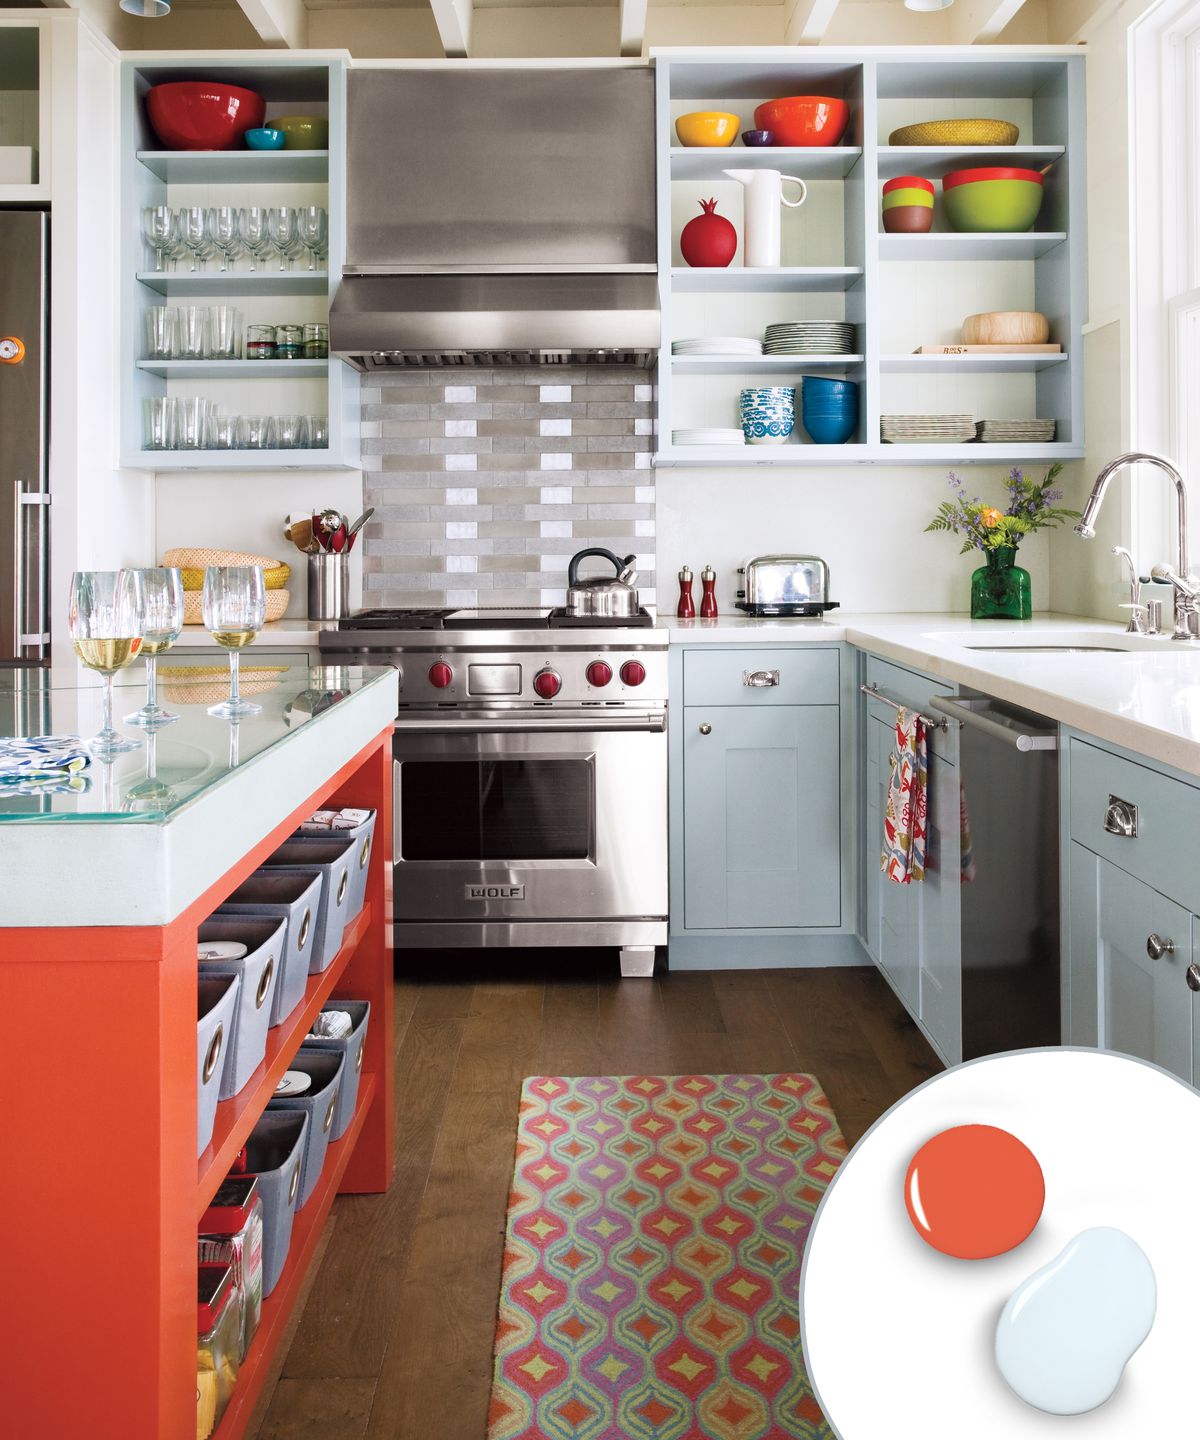 White, orange, and grey kitchen color scheme.